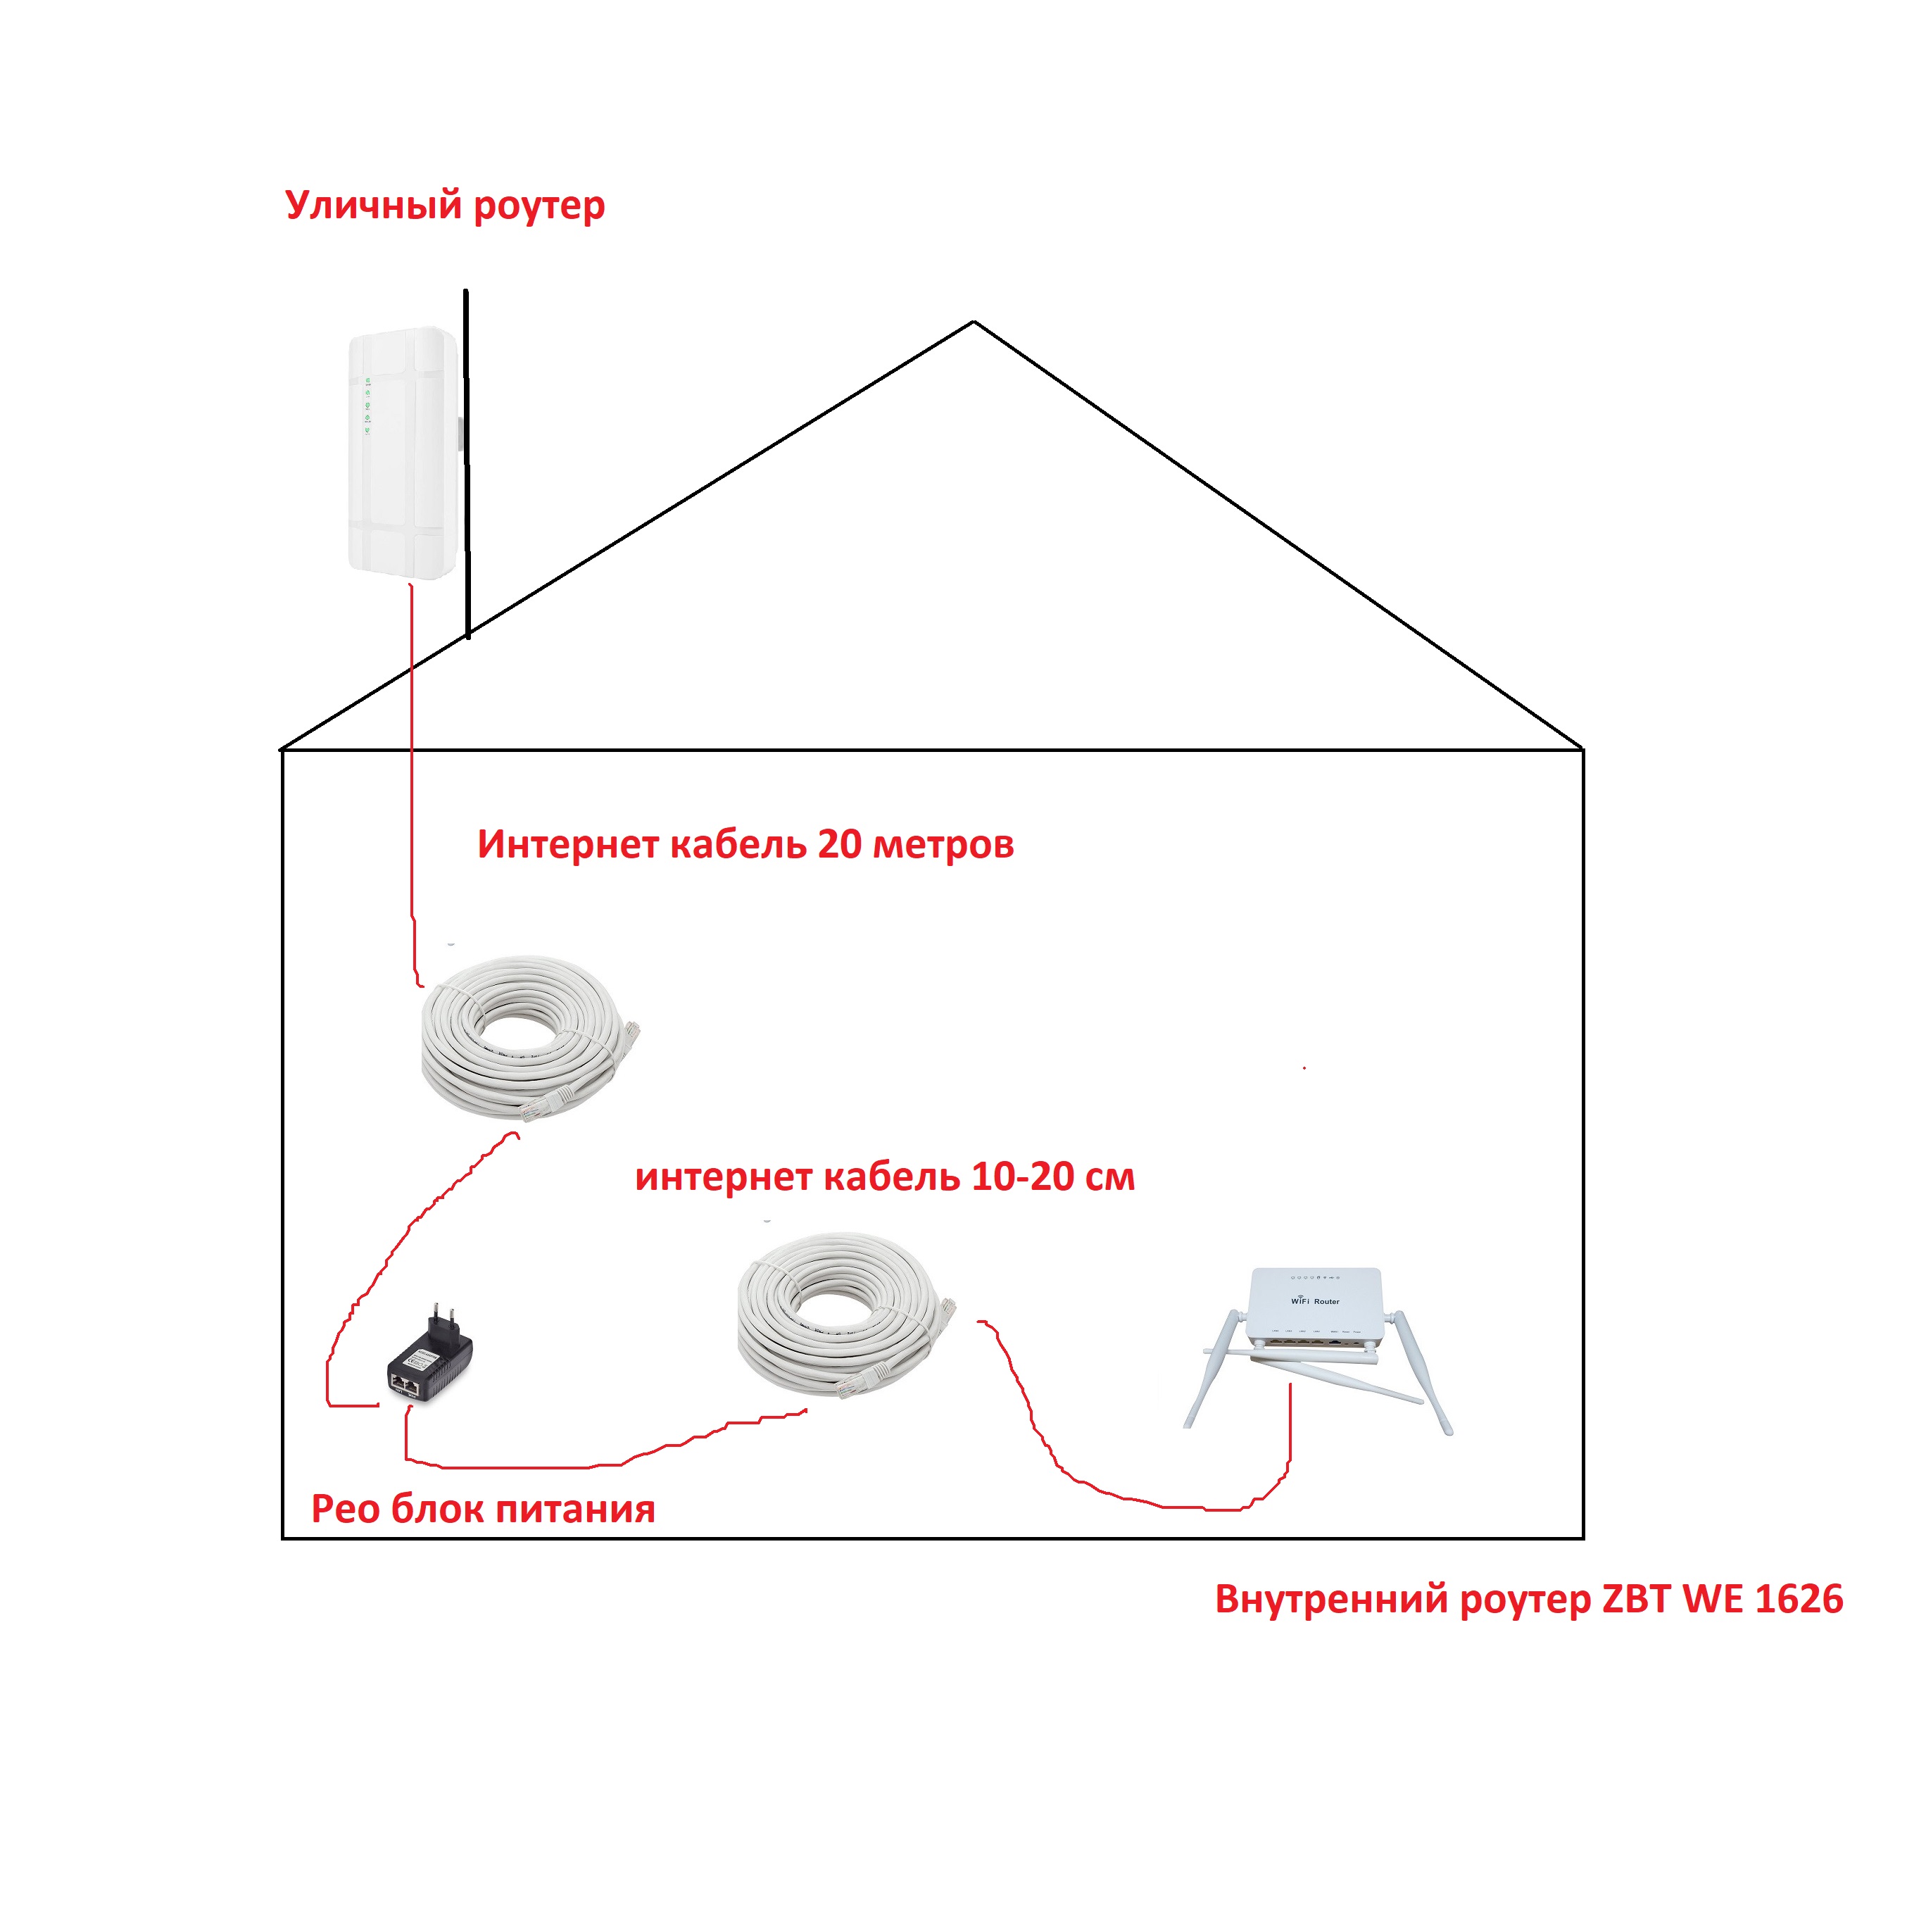 Уличный (outdoor) роутер 3G/4G LTE Cat.4 4G LTE CPE outdoor, с ZBT 1626 + POE-питание + 20 метров кабель